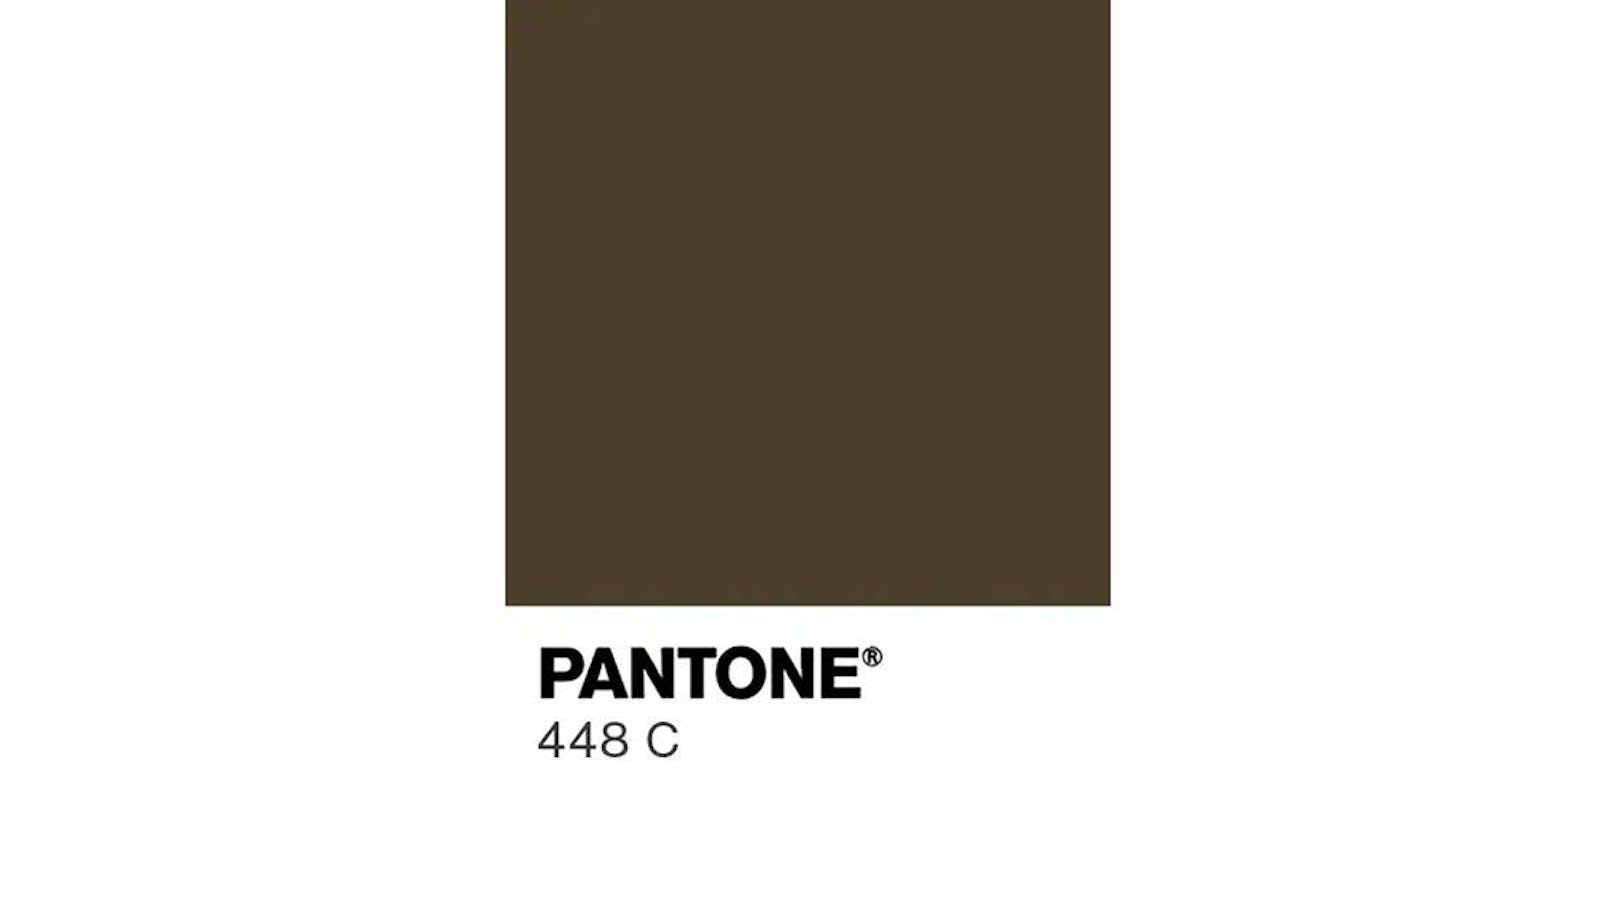 Das ist sie, die laut Marktforschung hässlichste Farbe der Welt: Pantone 448C.